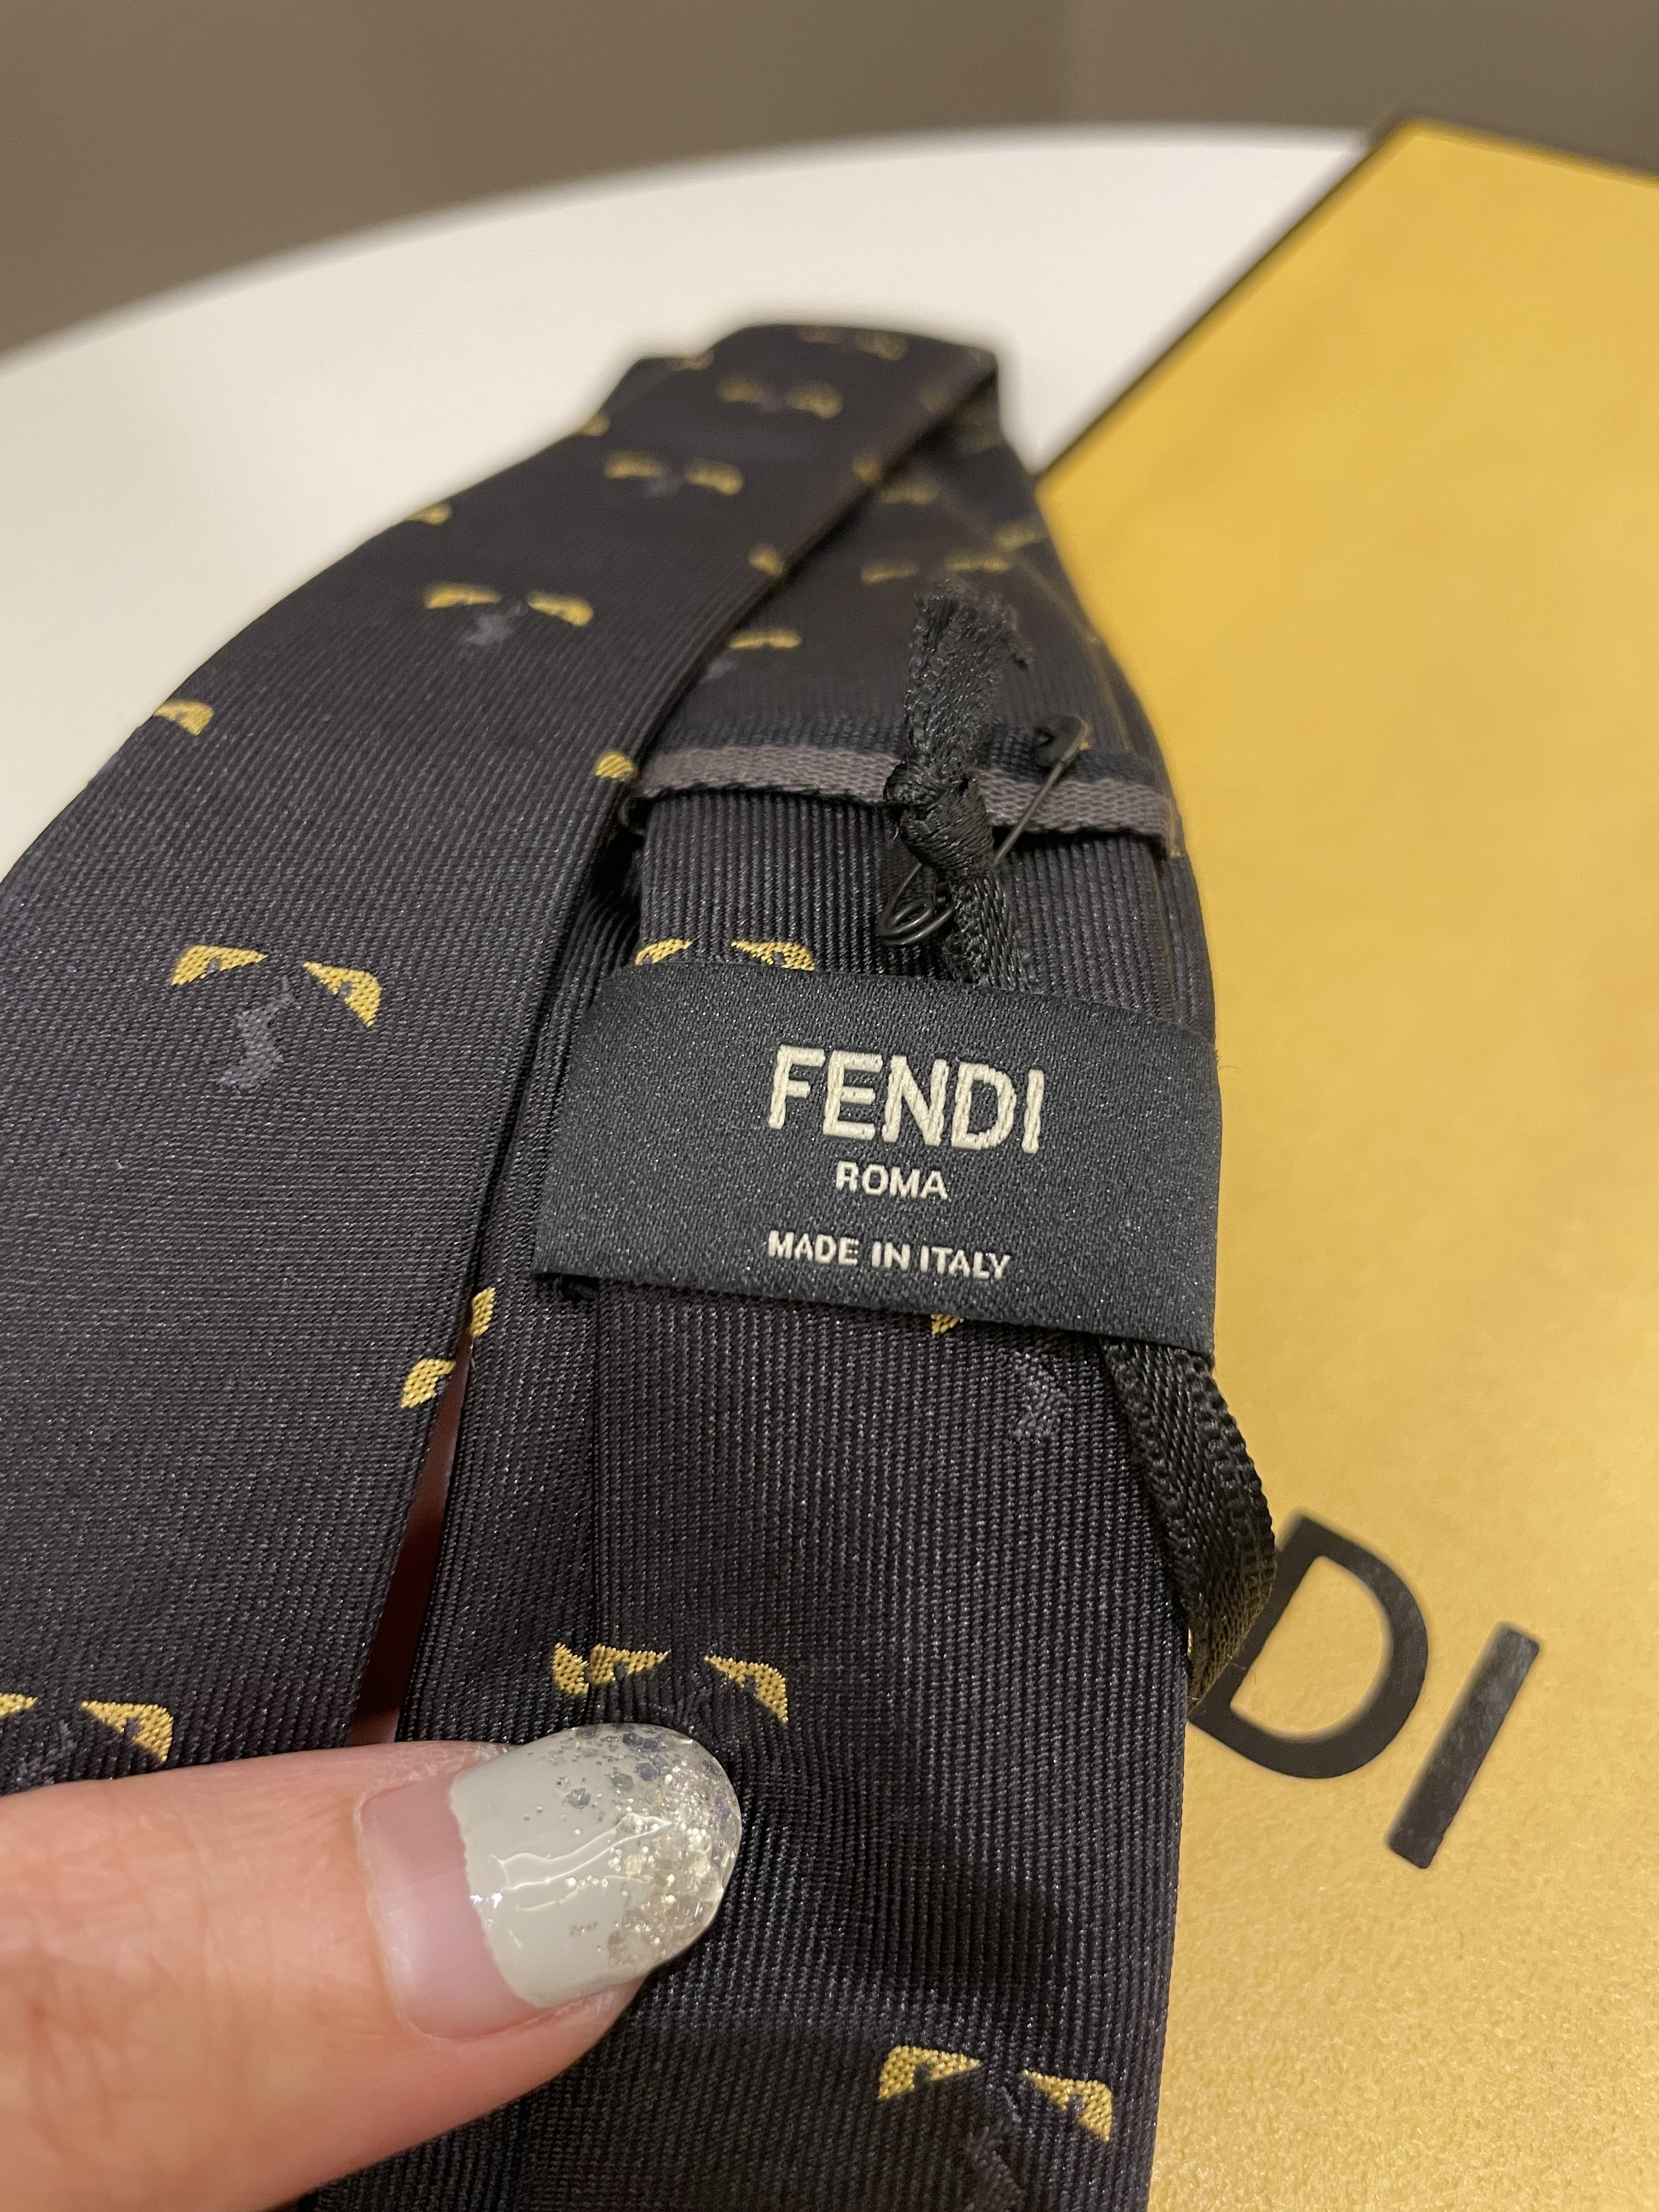 Fendi Monster Tie
Black